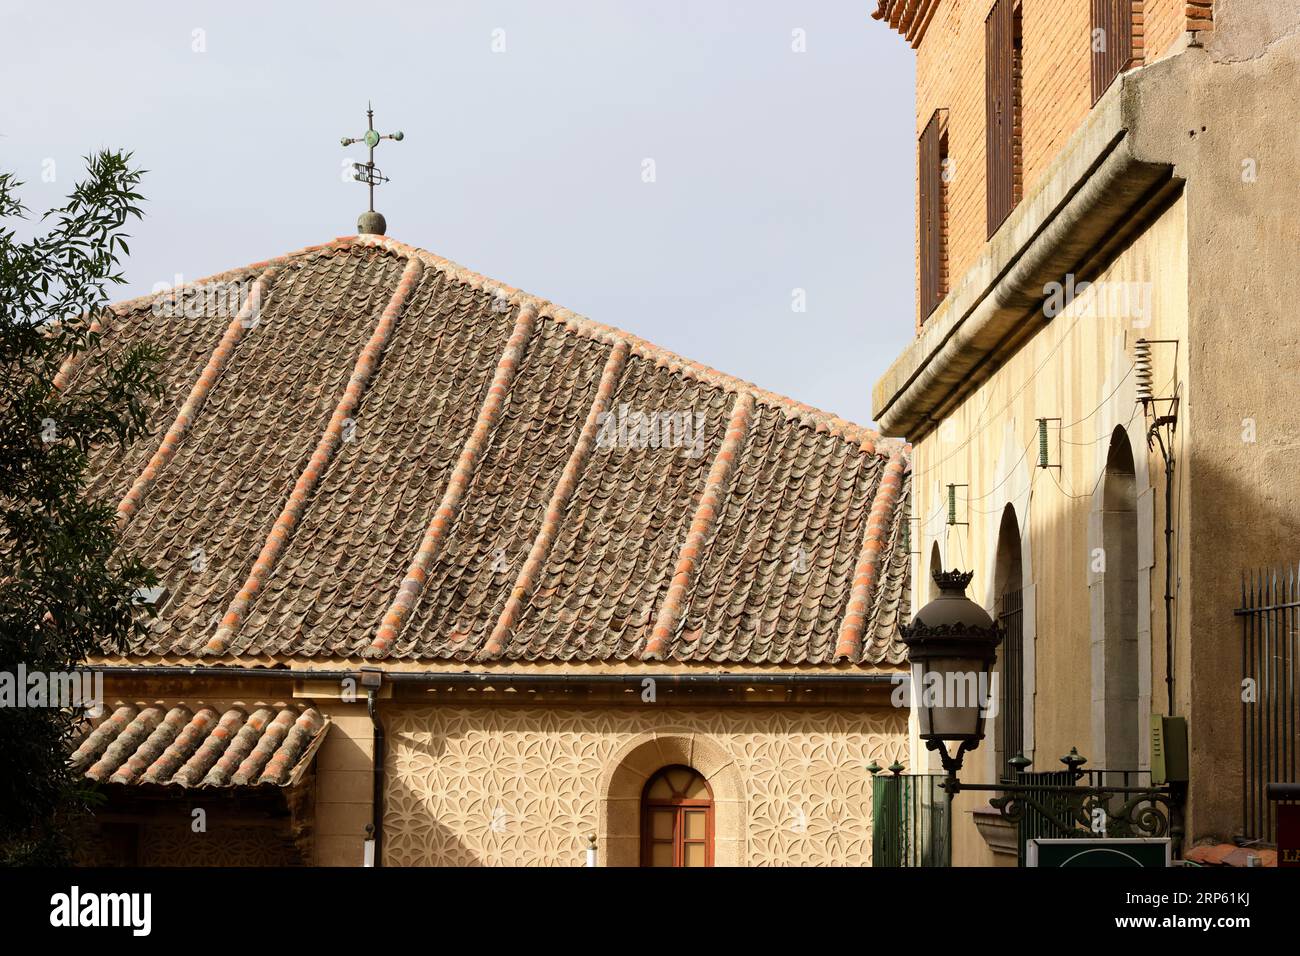 Dettagli nel centro storico di Segovia Foto Stock